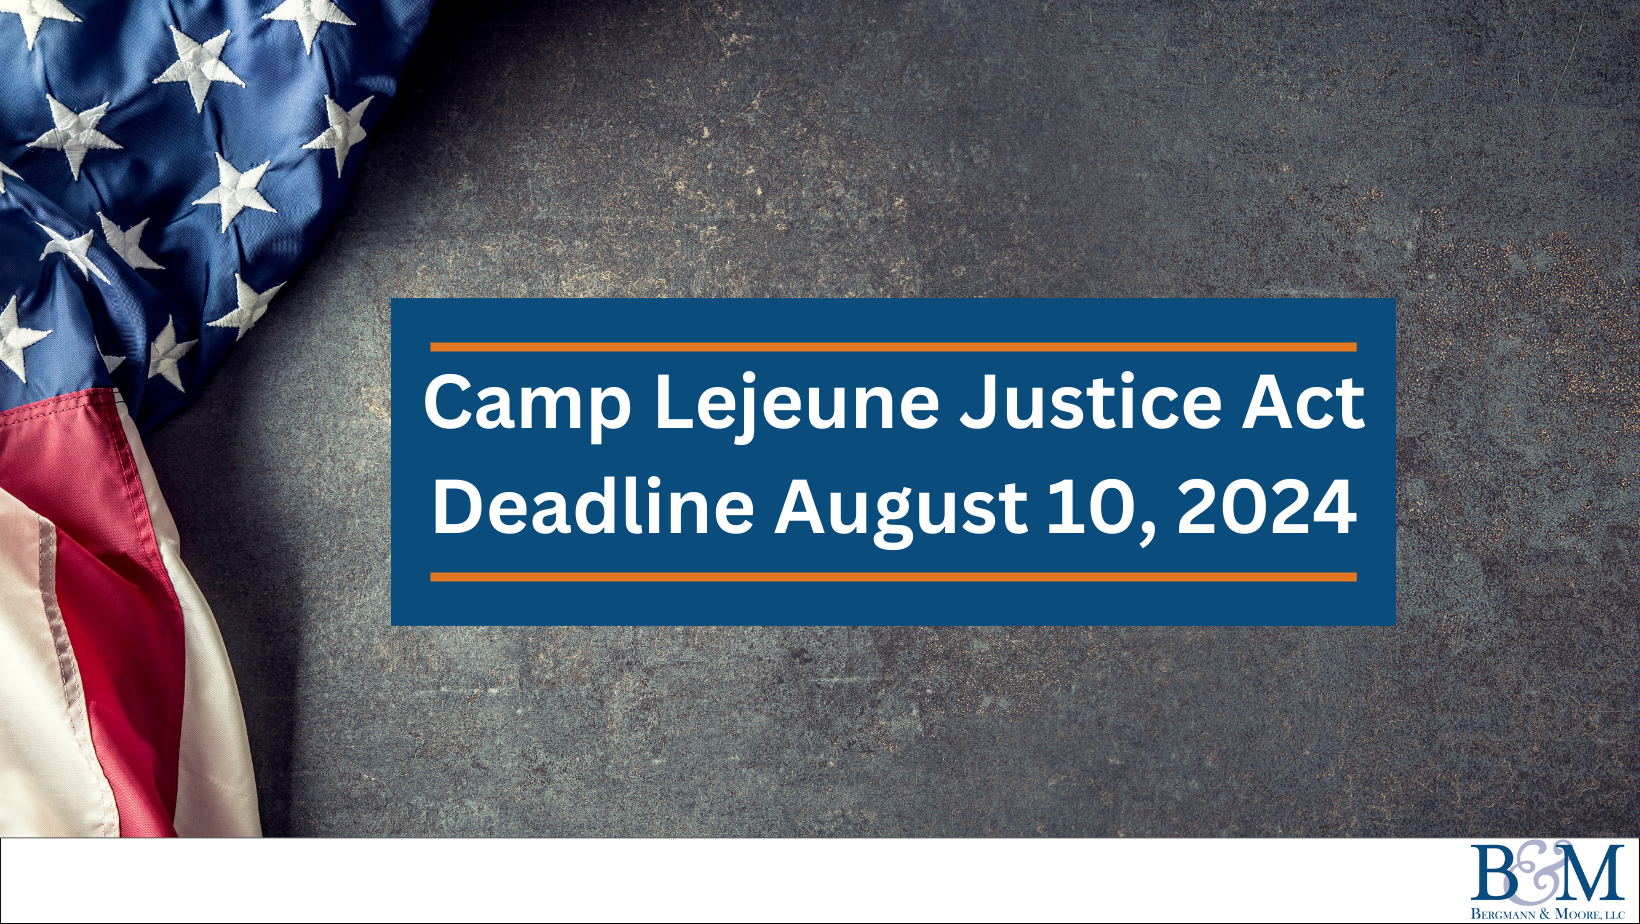 Camp Lejeune Lawsuit blog image